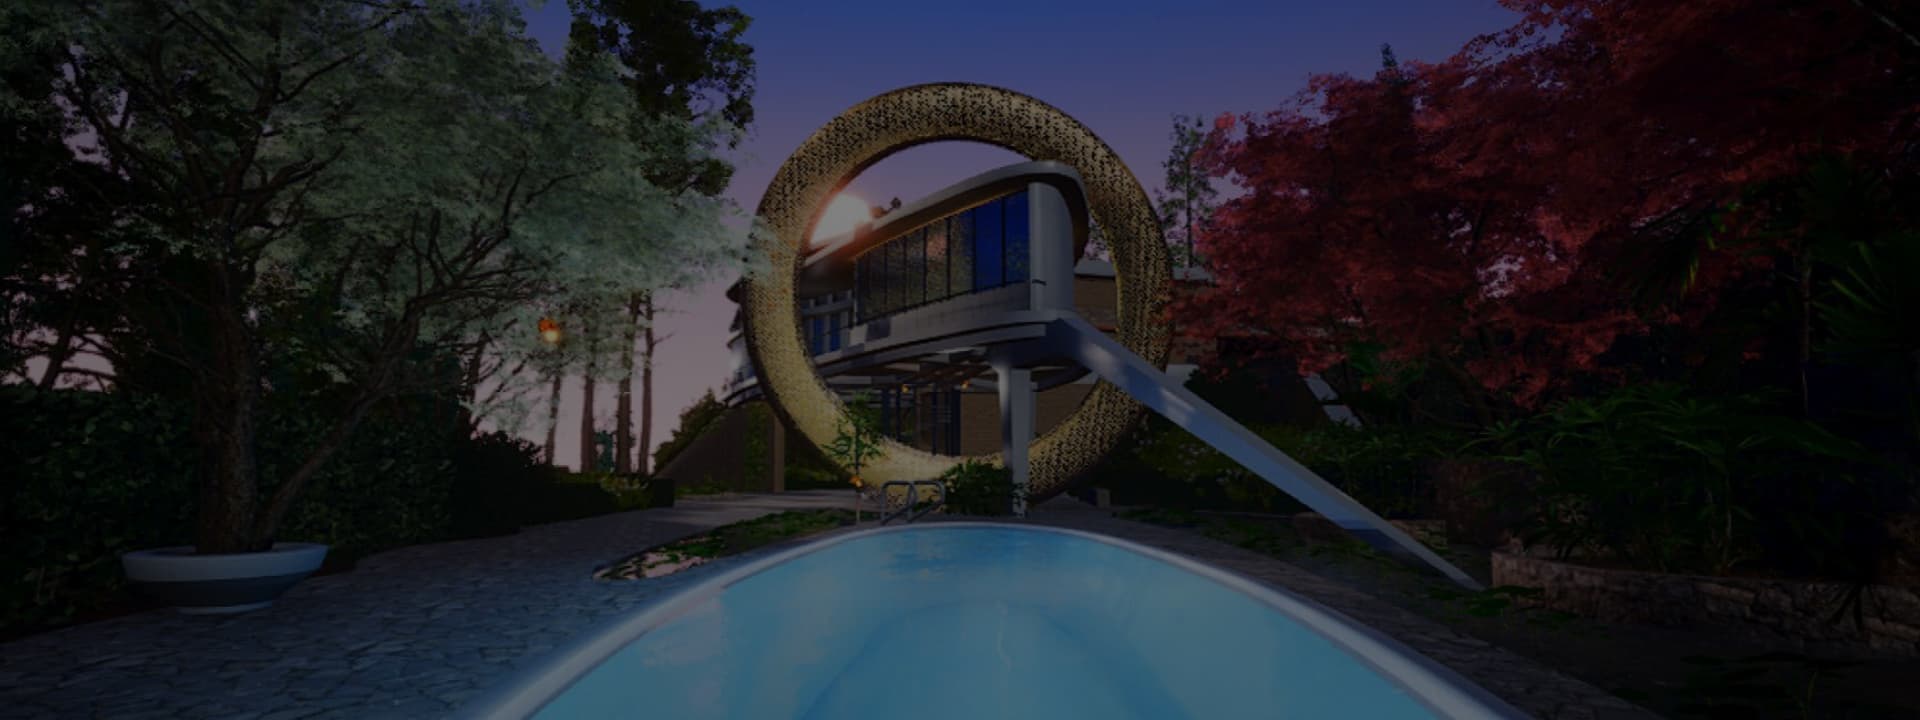 Balmain unveils a metaverse mansion Villa Balmain in the metaverse designed by Alexandre Arrechea at Miami Art Basel